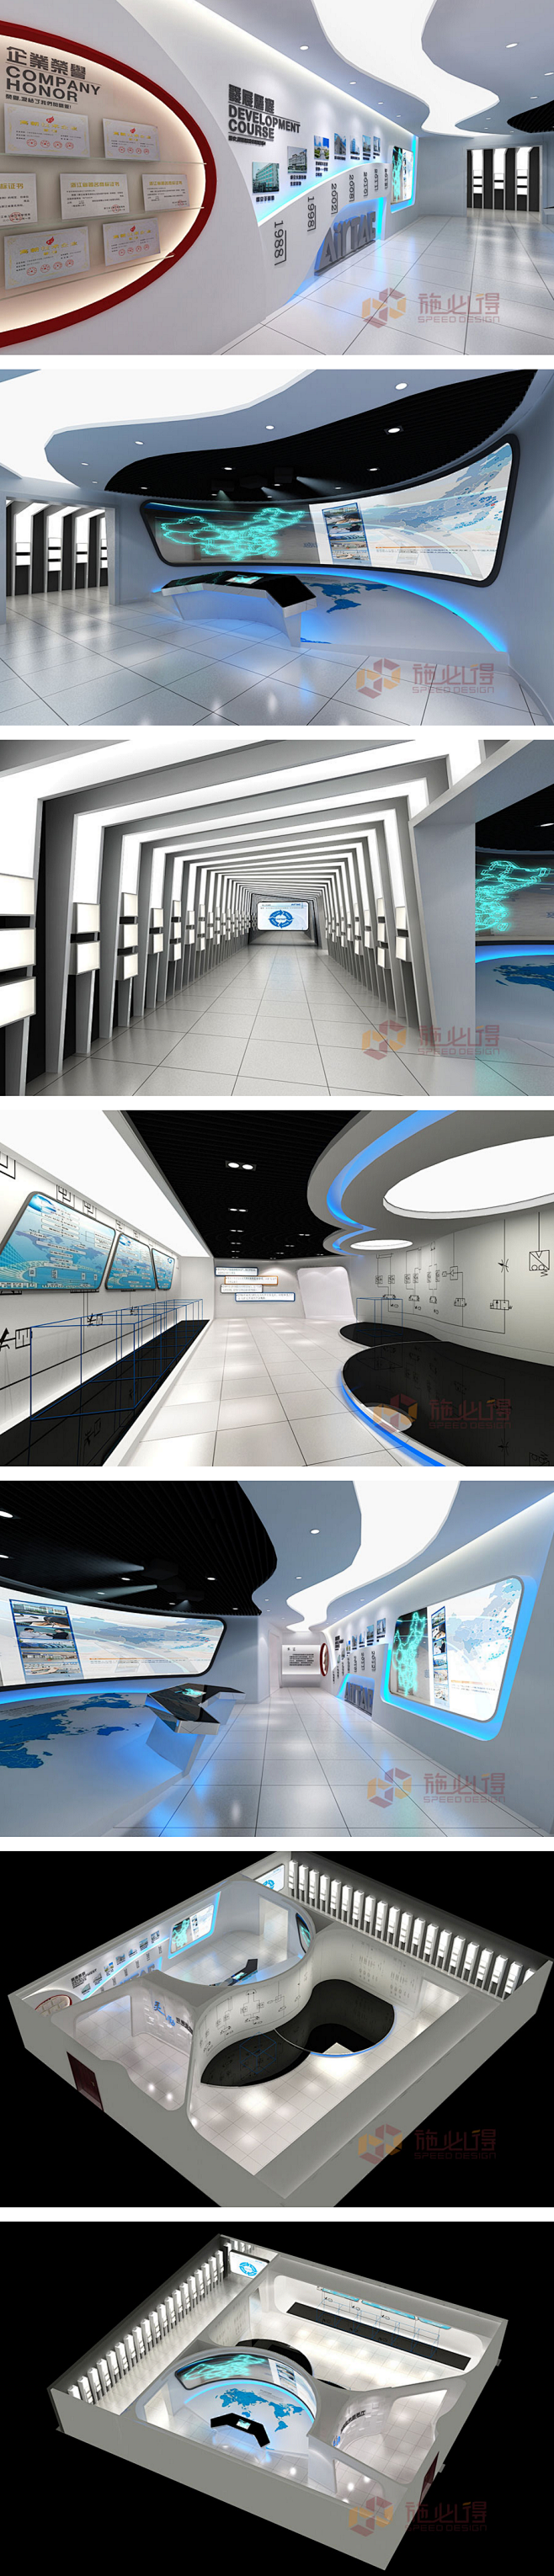 多媒体互动展厅 3d展厅模型 主题文化墙...